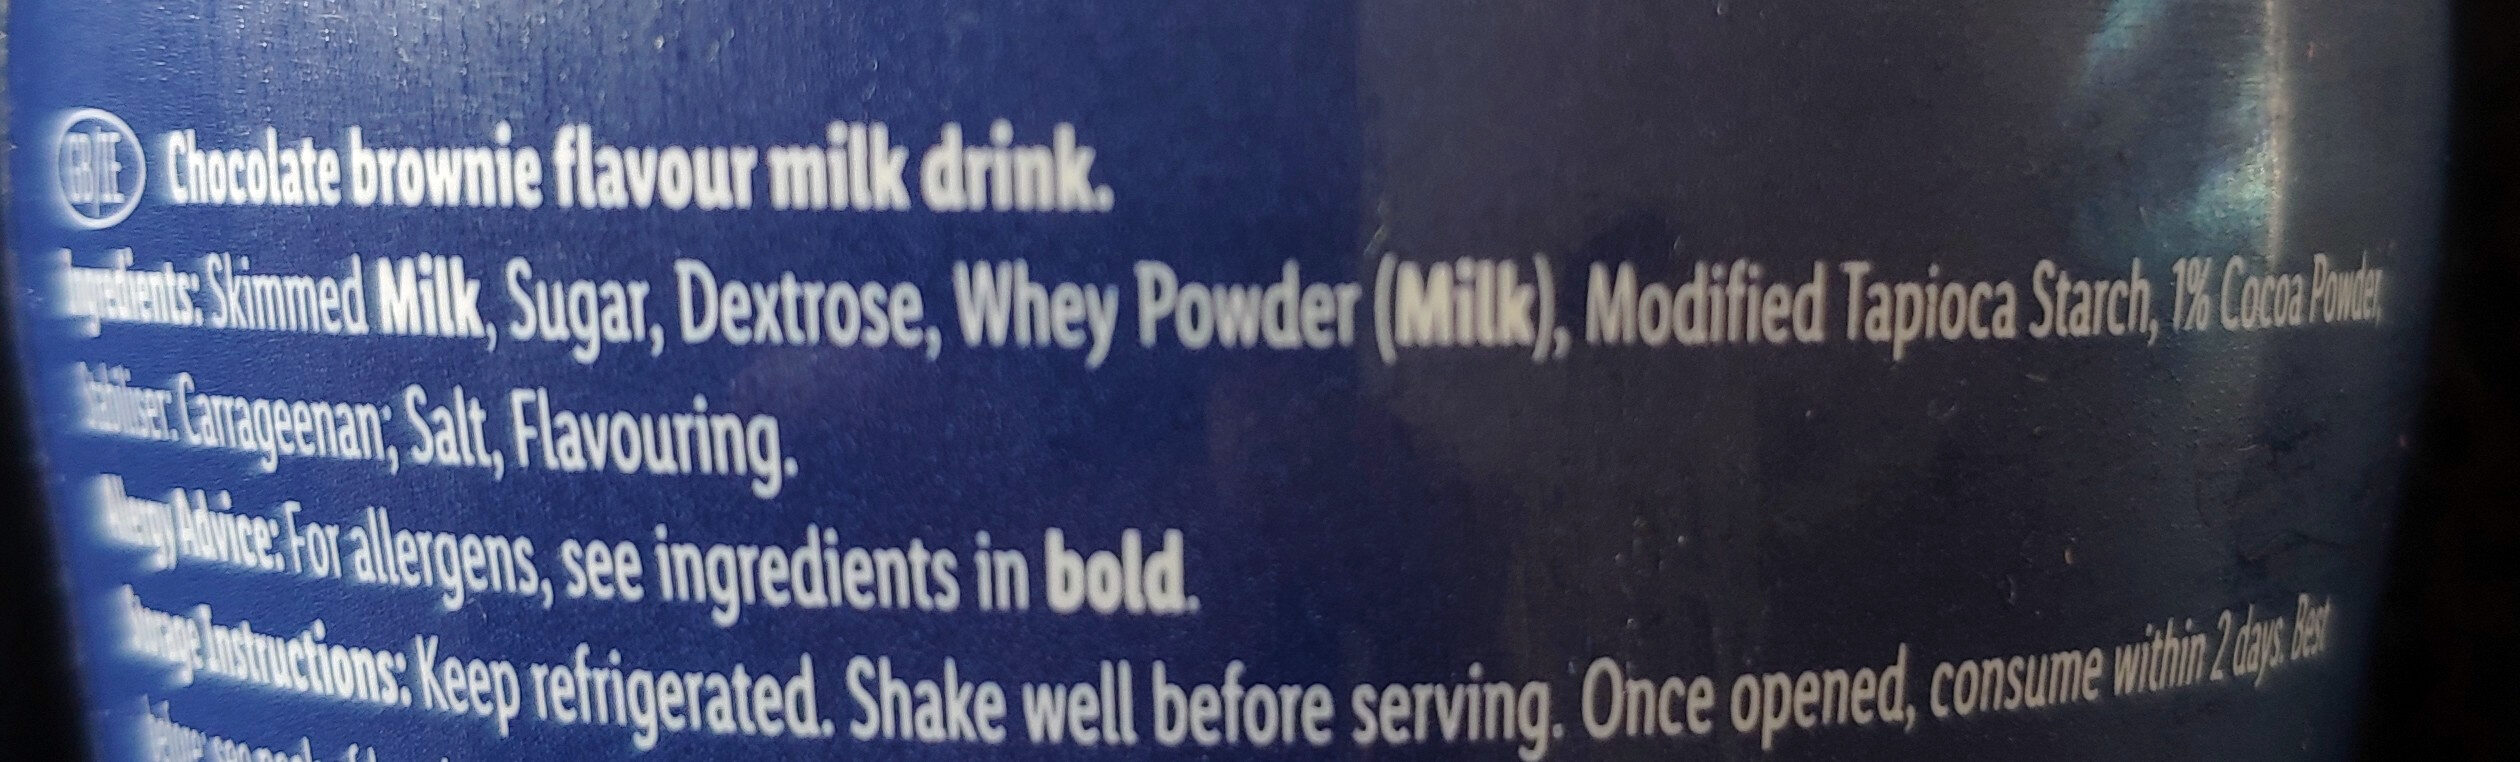 Milk Drink Mcennedy, Brownie Flavour - Ingredients - en